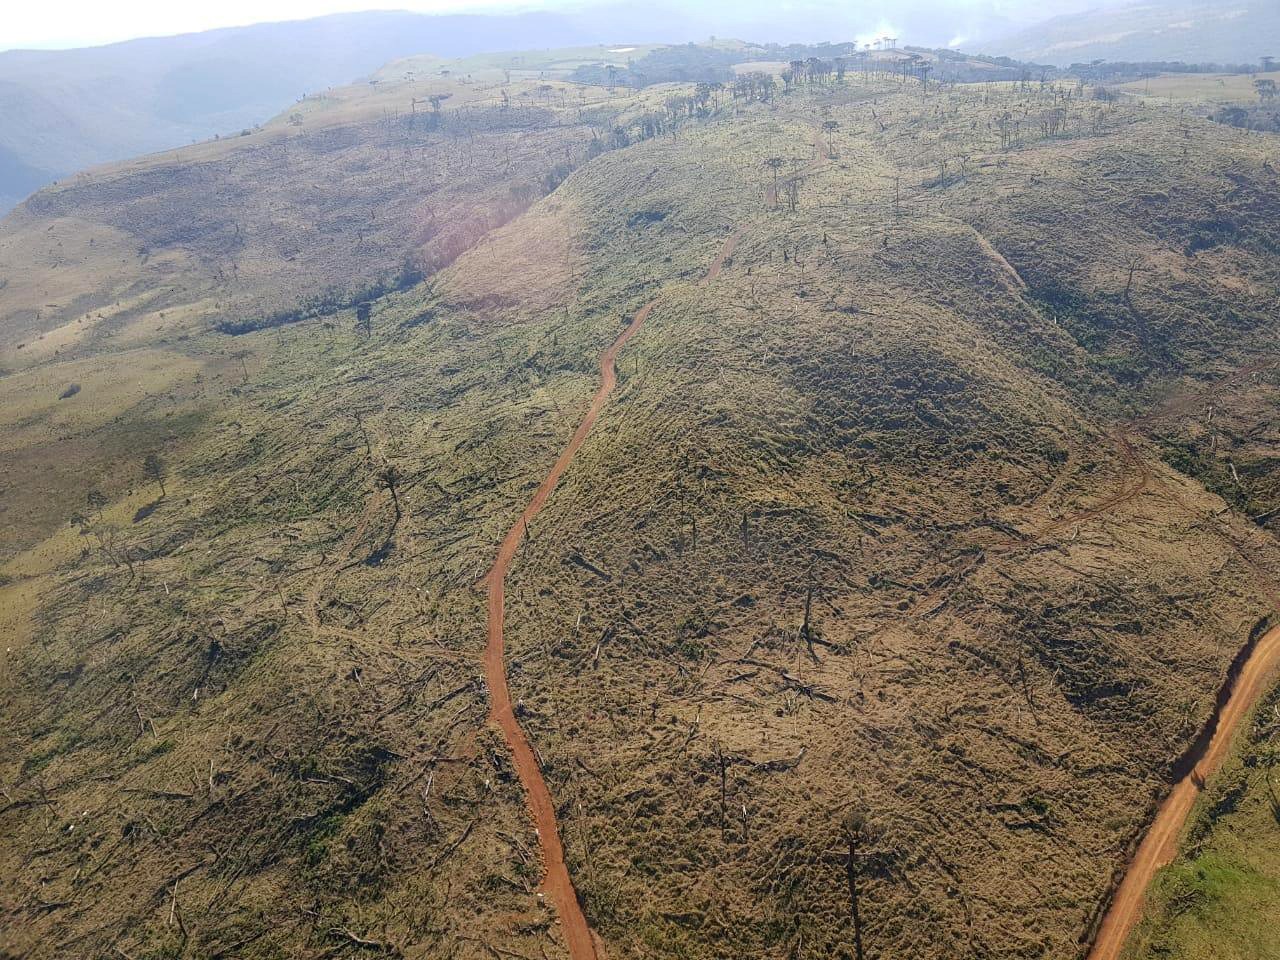 Operação Mata Atlântica encontra mais 121 hectares desmatados